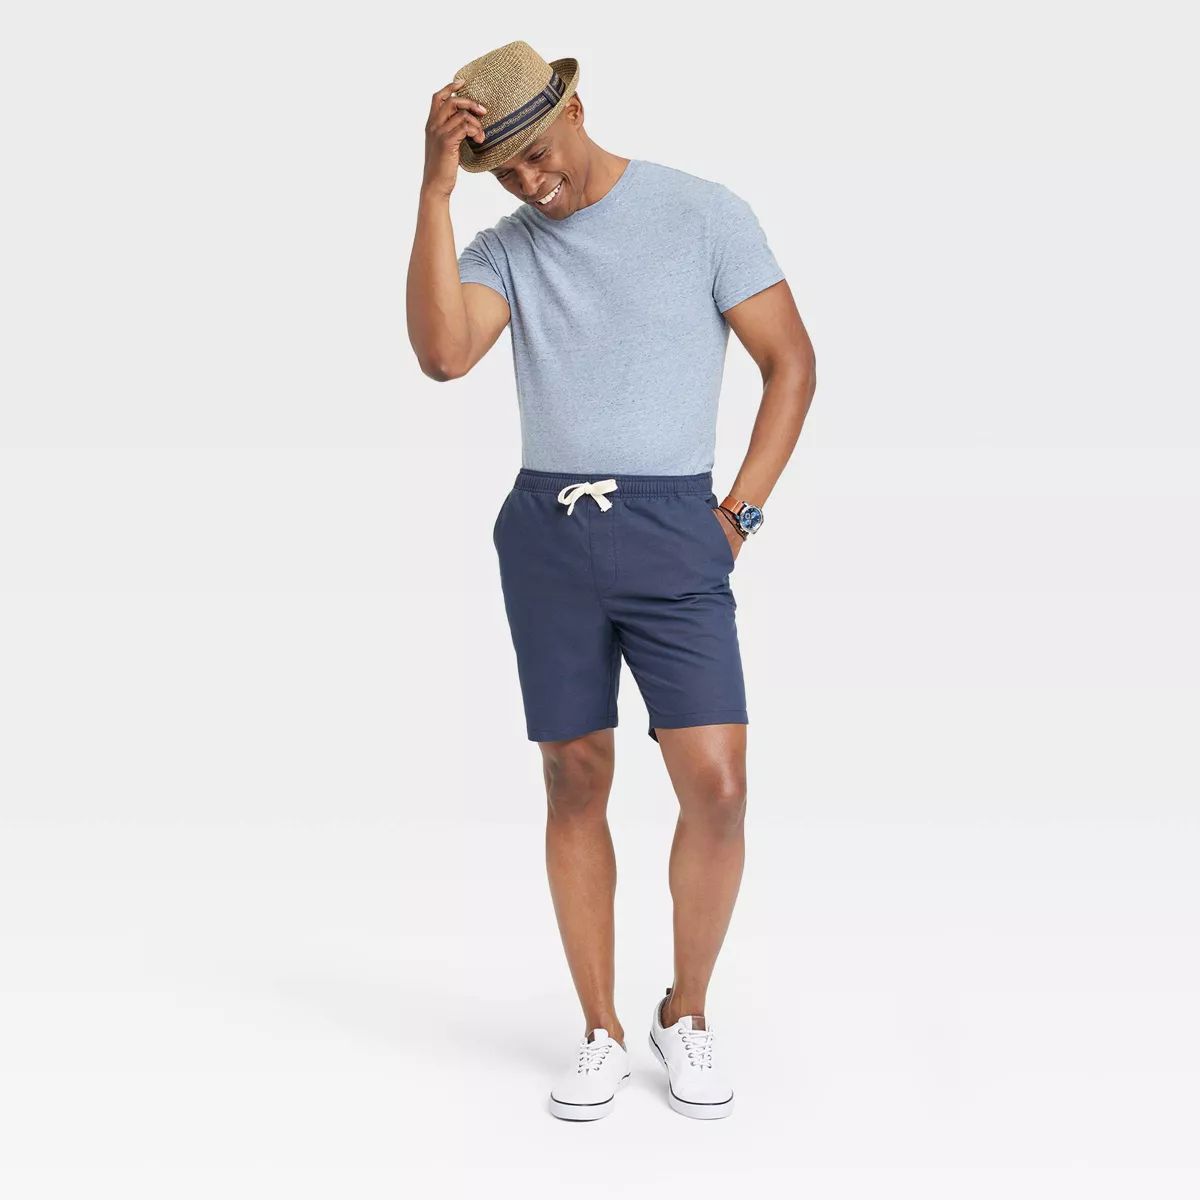 Men's Short Sleeve Crewneck T-Shirt - Goodfellow & Co™ | Target